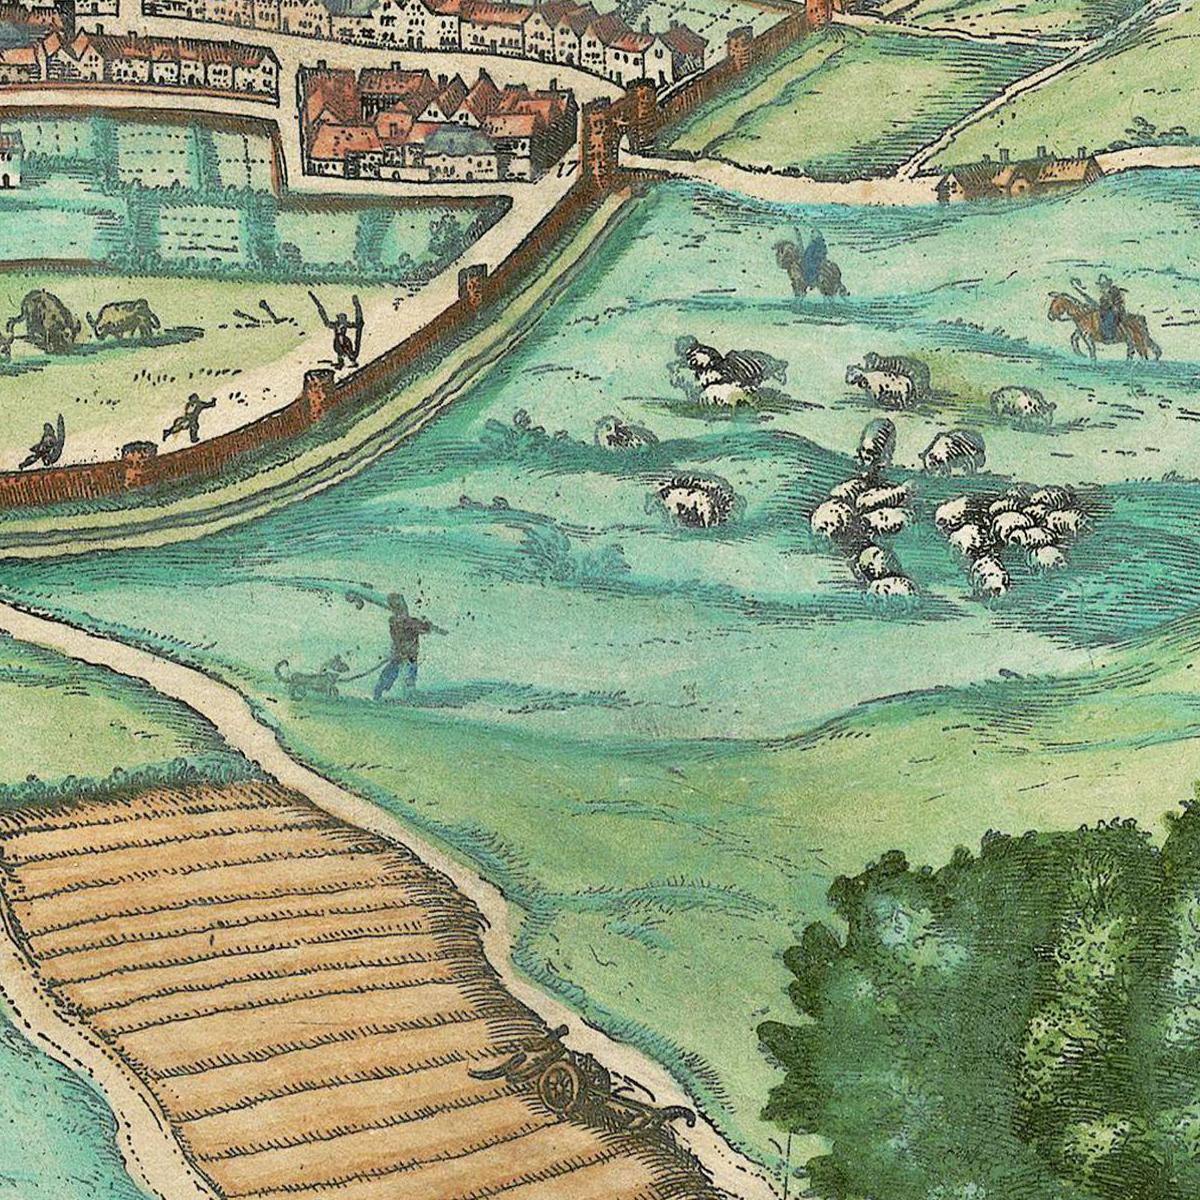 Historische Stadtansicht Norwich um 1609